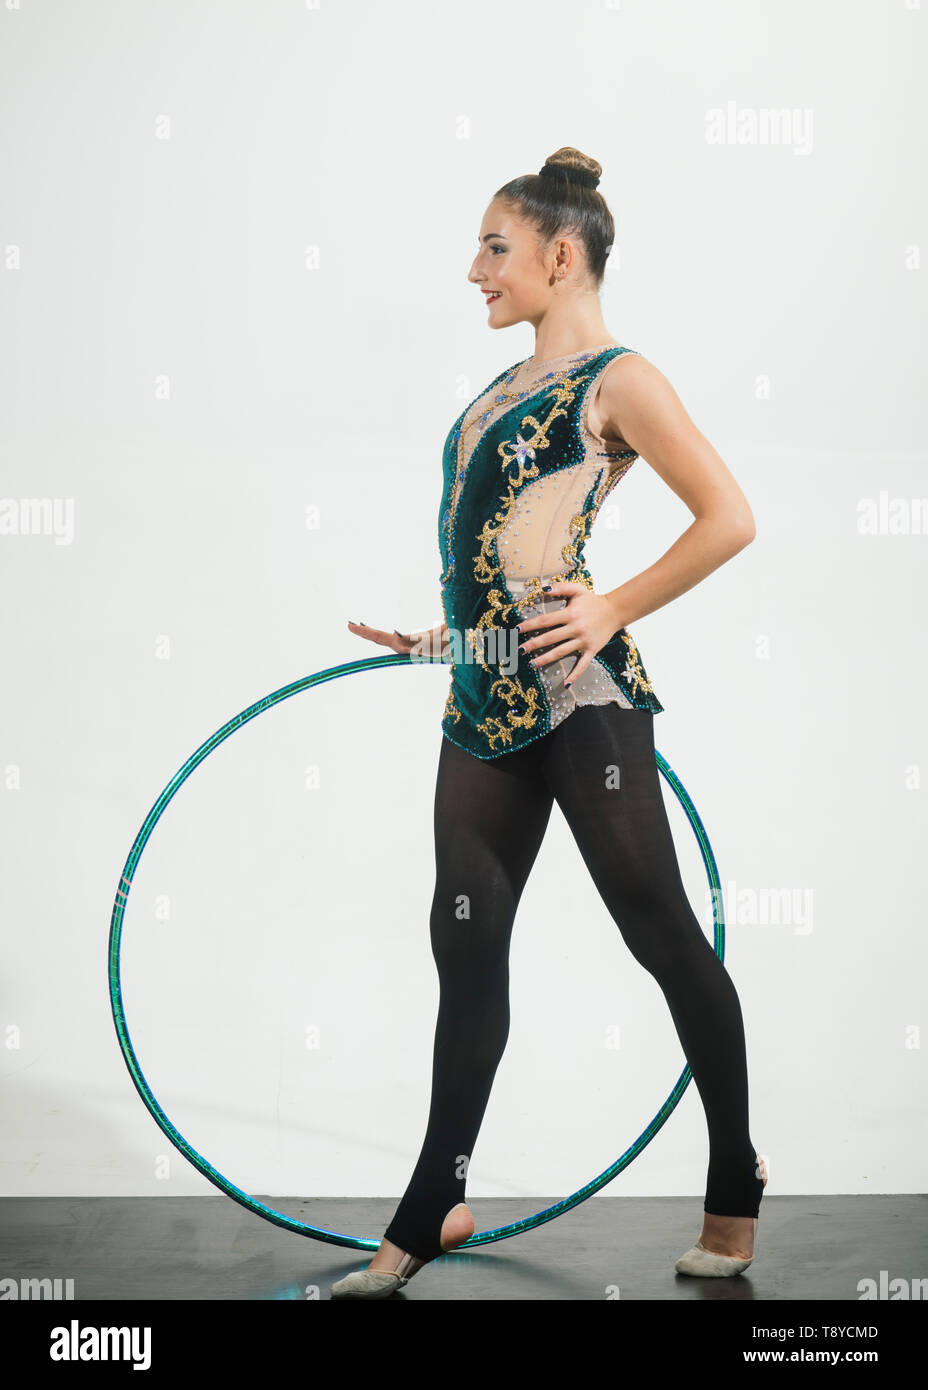 Mujer tren acrobacias con hula hoop en ropa deportiva. El éxito del deporte y la salud. Actividades deportivas del entrenamiento en el gimnasio flexible. Dieta Fotografía de stock -